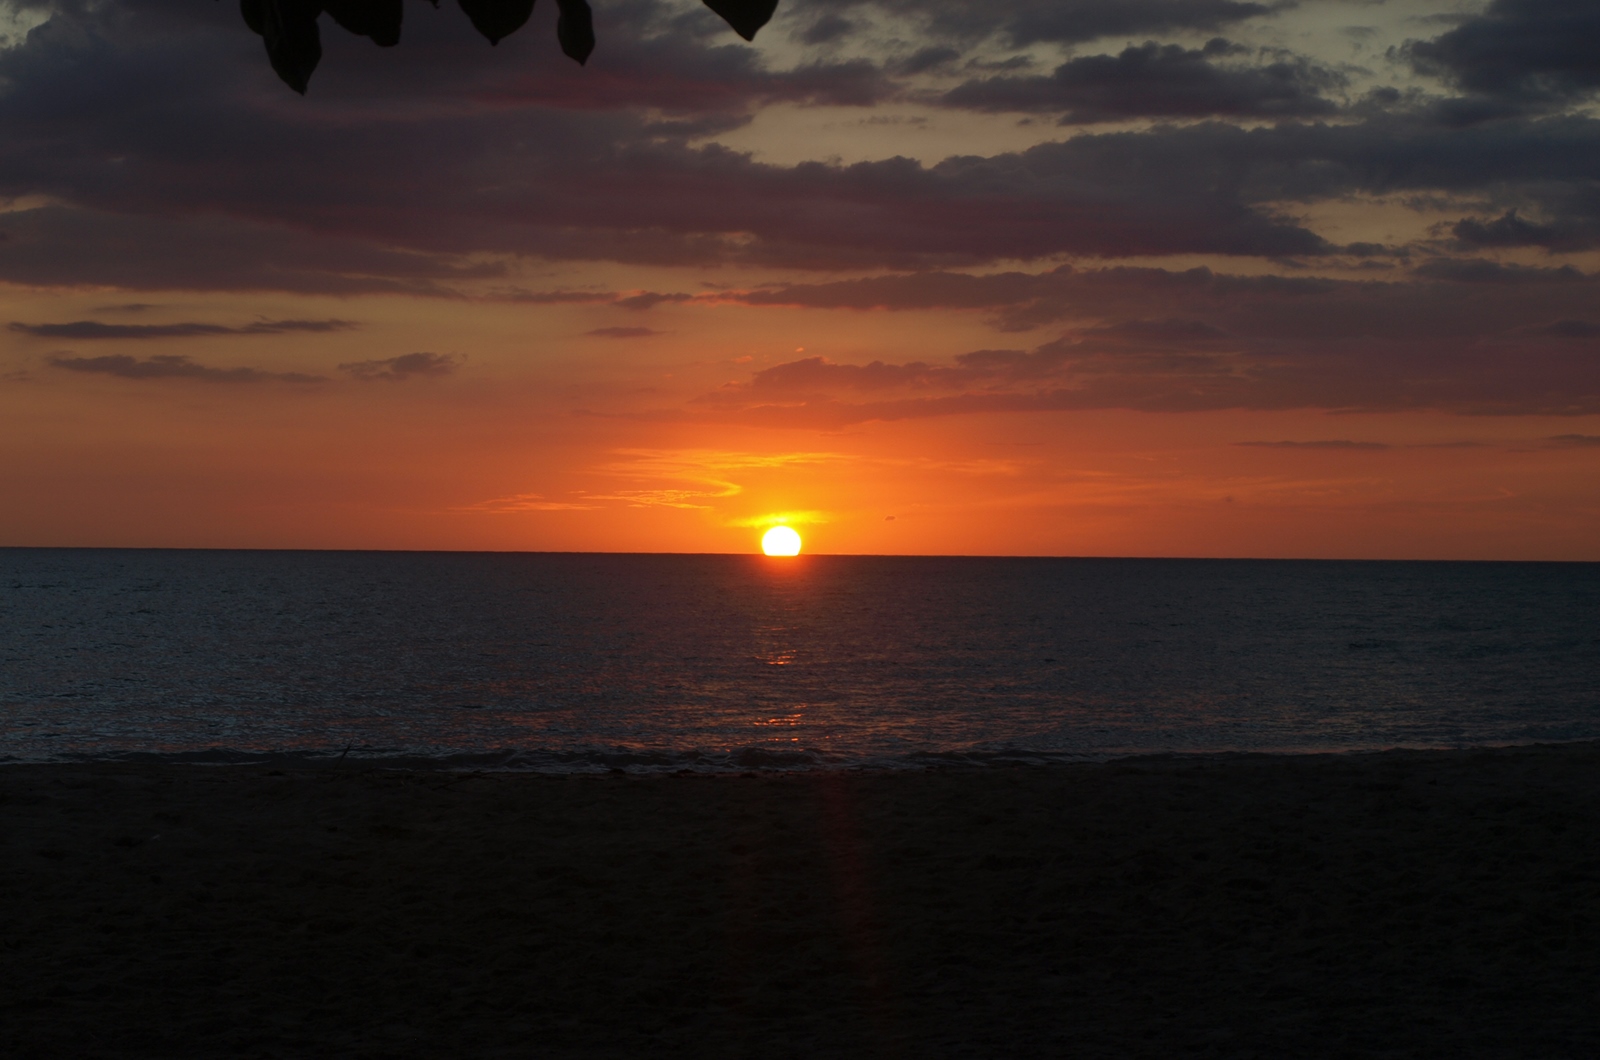 Sunset in Port Salut